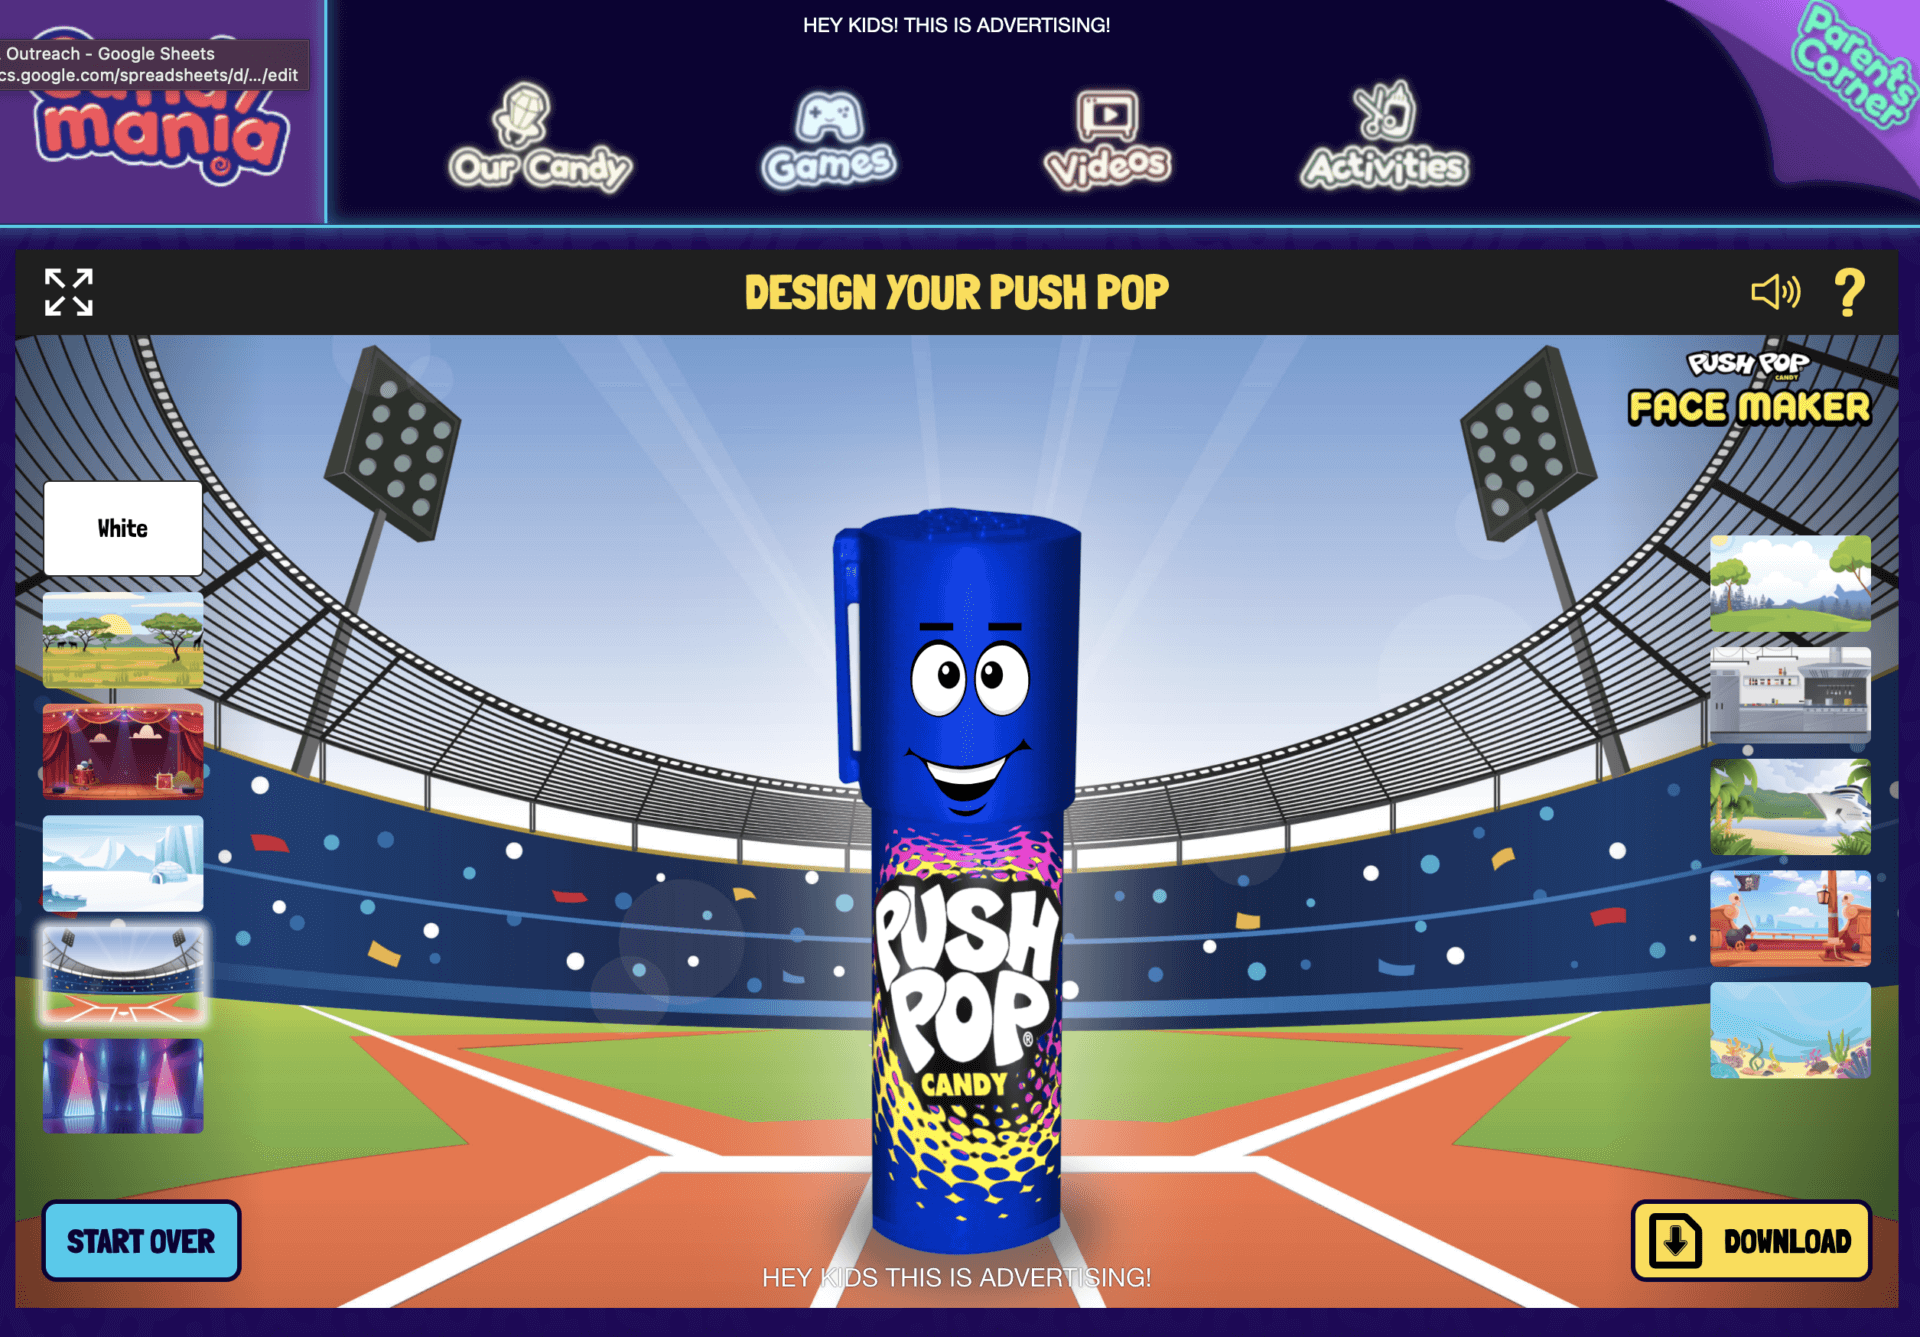 Bazooka Candy: Push Pop Face Maker 